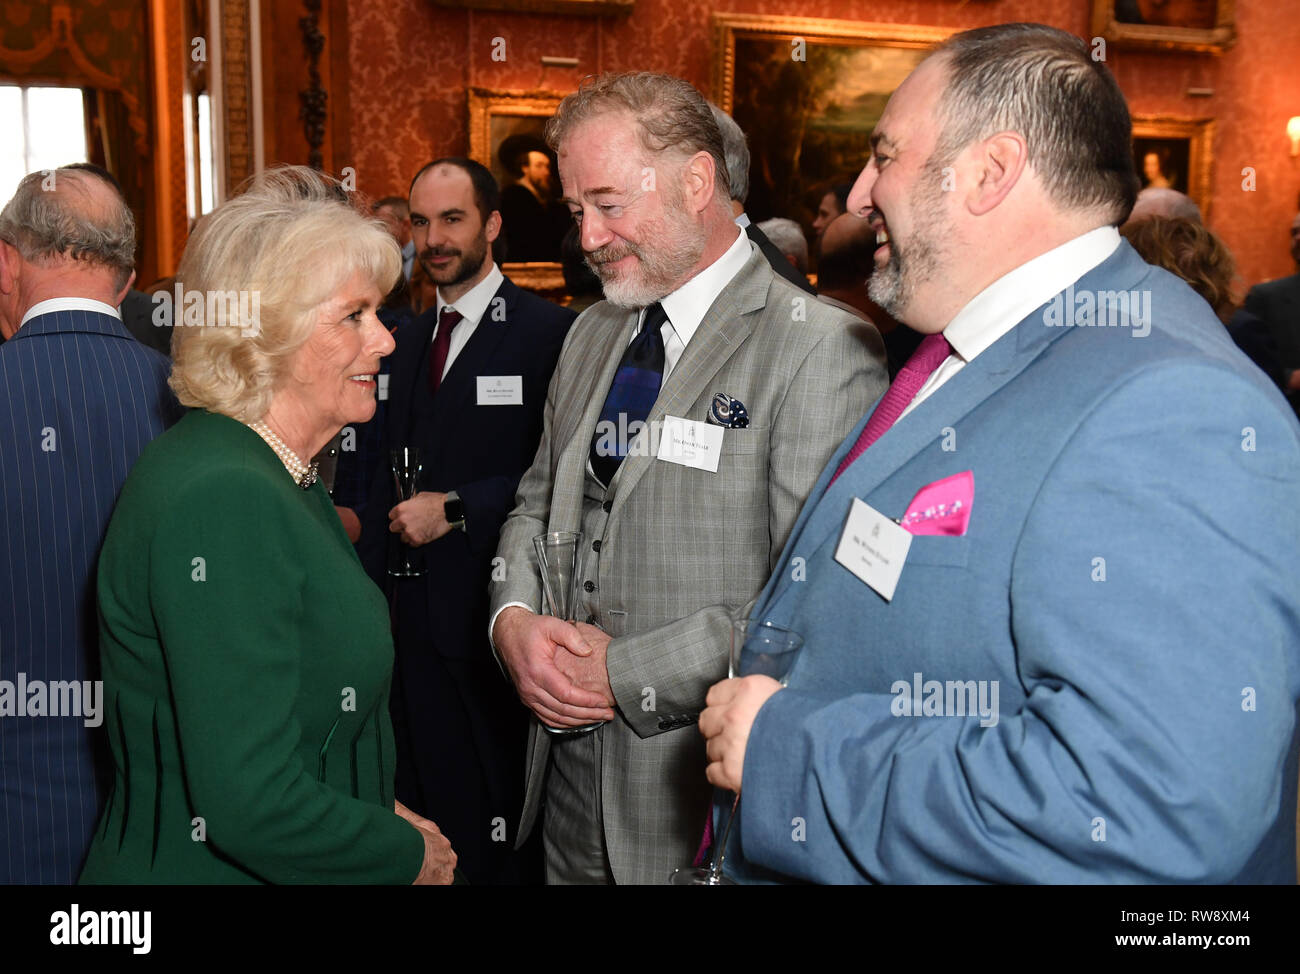 La duchesse de Cornouailles parle avec l'acteur Owen Teale et singer Wynne Evans (à droite) lors d'une réception au palais de Buckingham à Londres pour marquer le cinquantième anniversaire de l'investiture du Prince de Galles. Banque D'Images